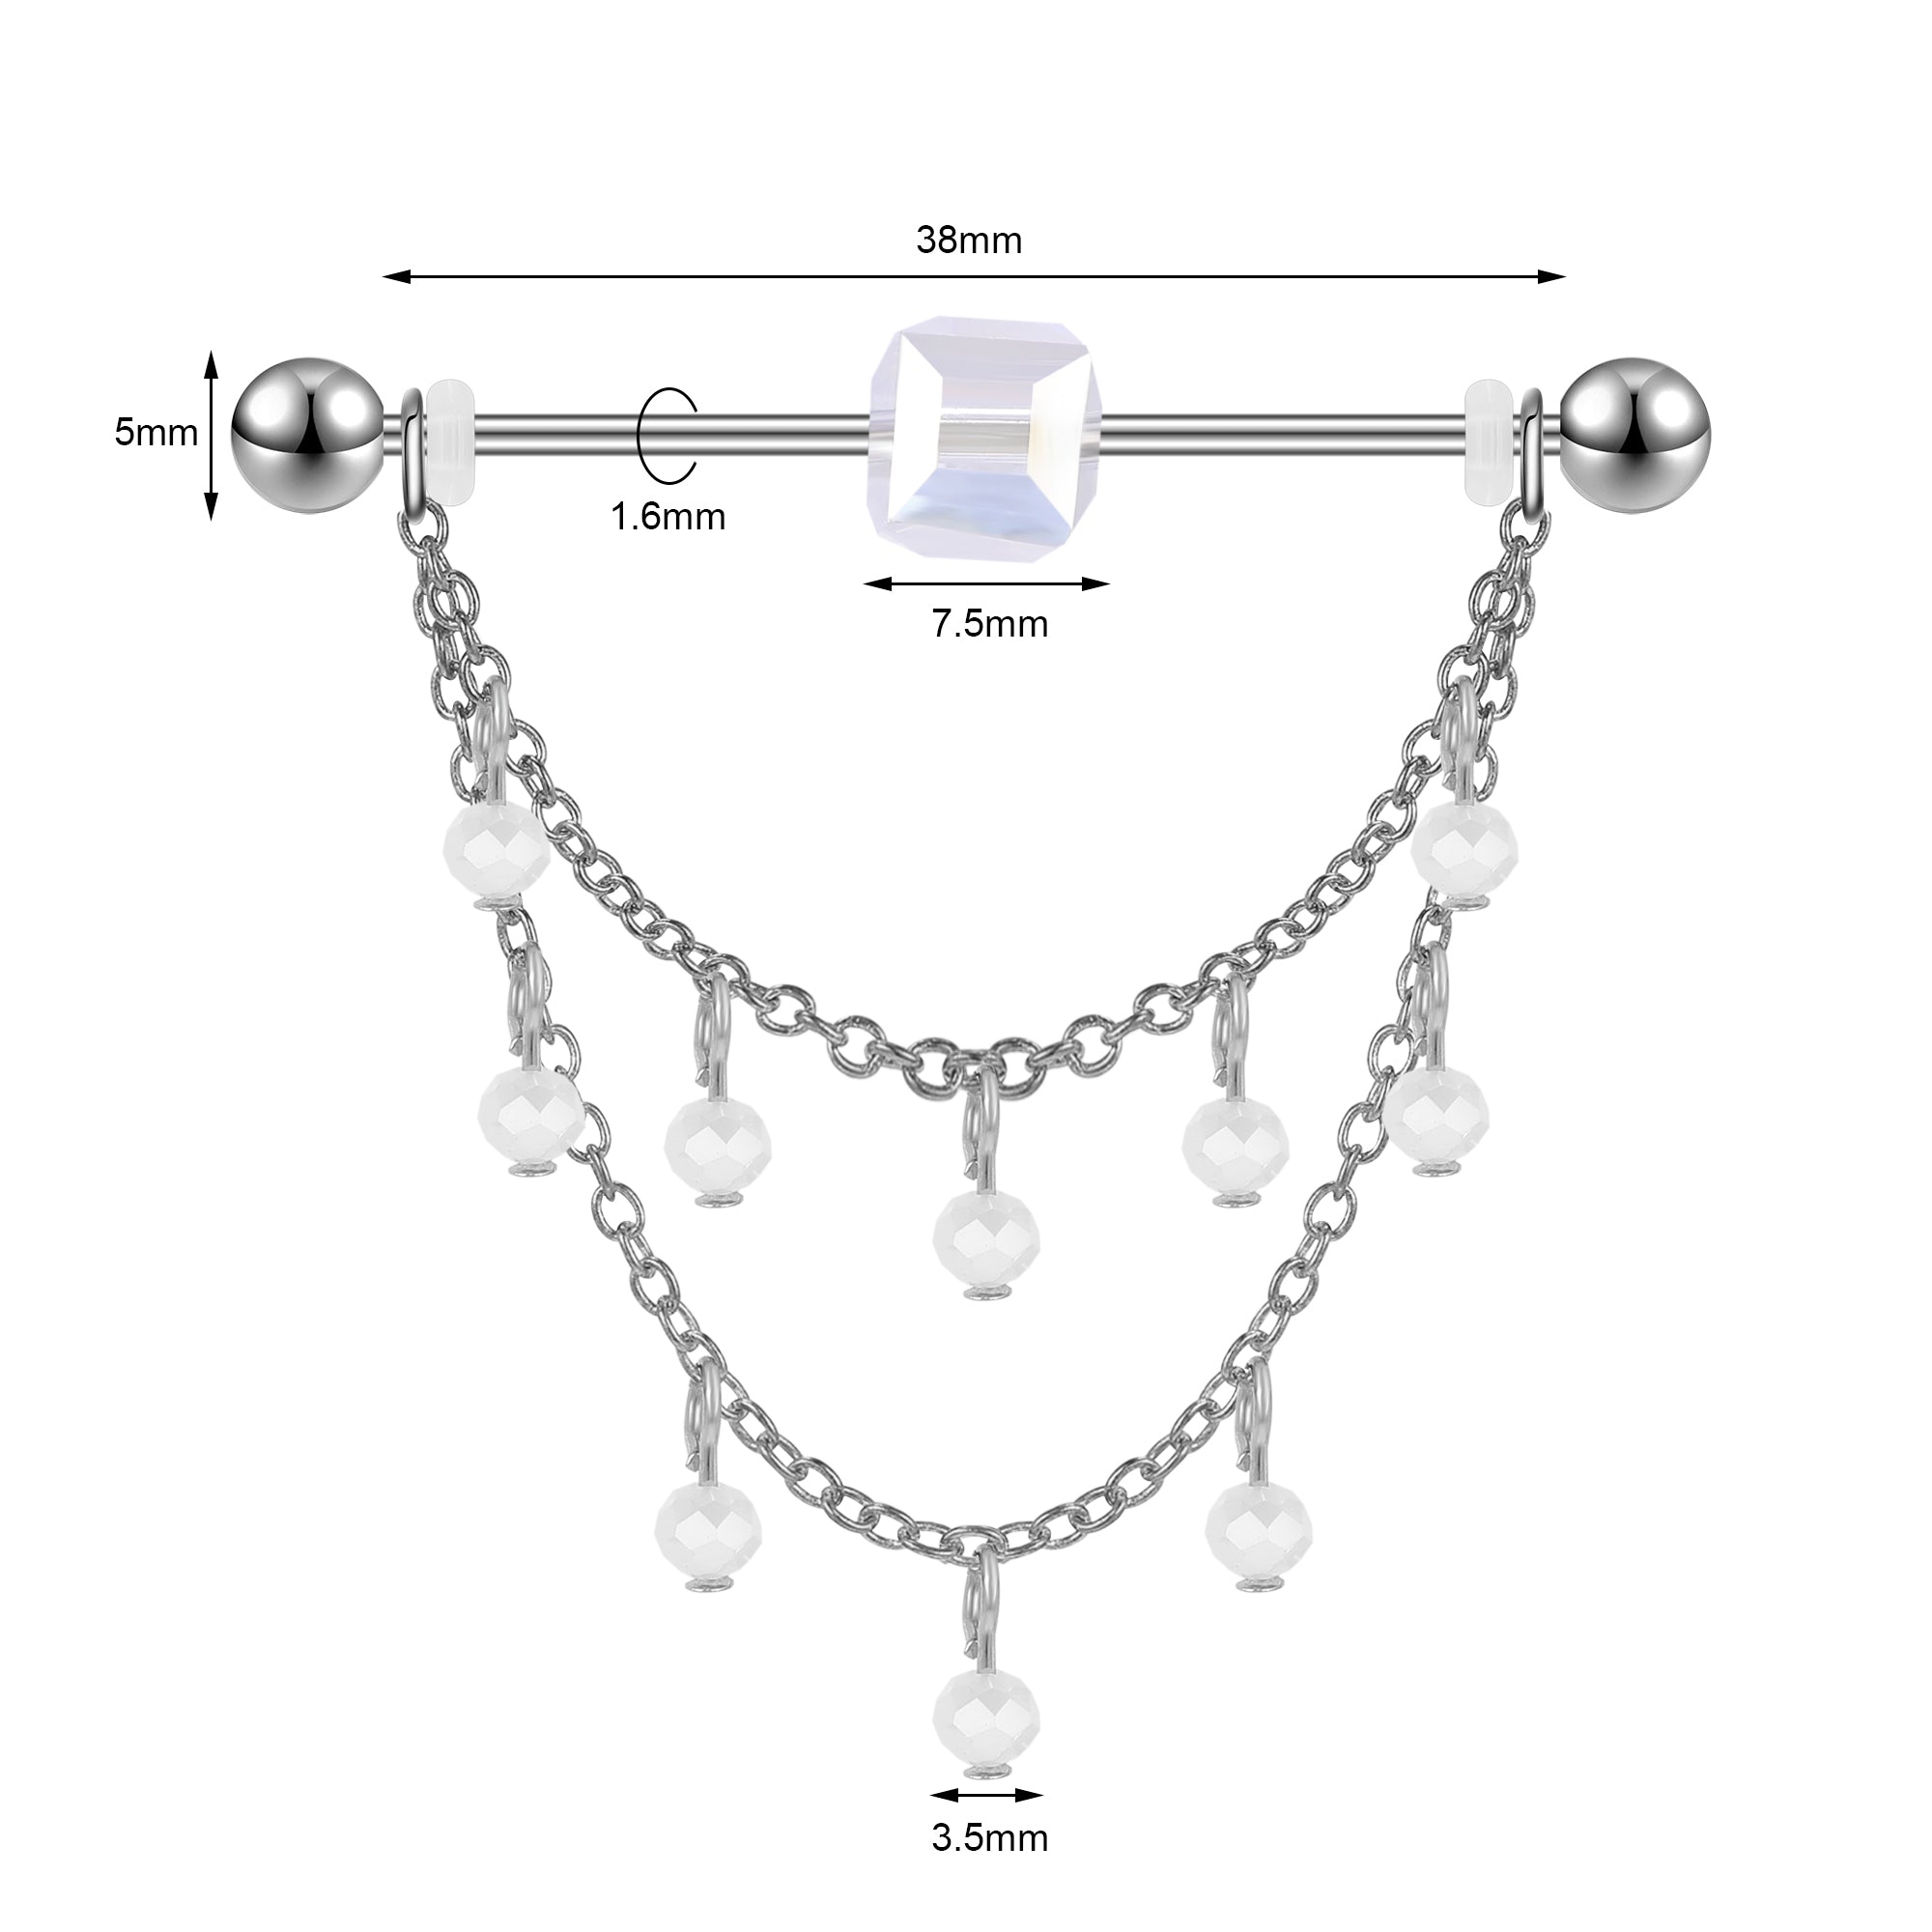 14g-tassel-industrial-barbell-earring-dangle-chain-stud-earring-piercing